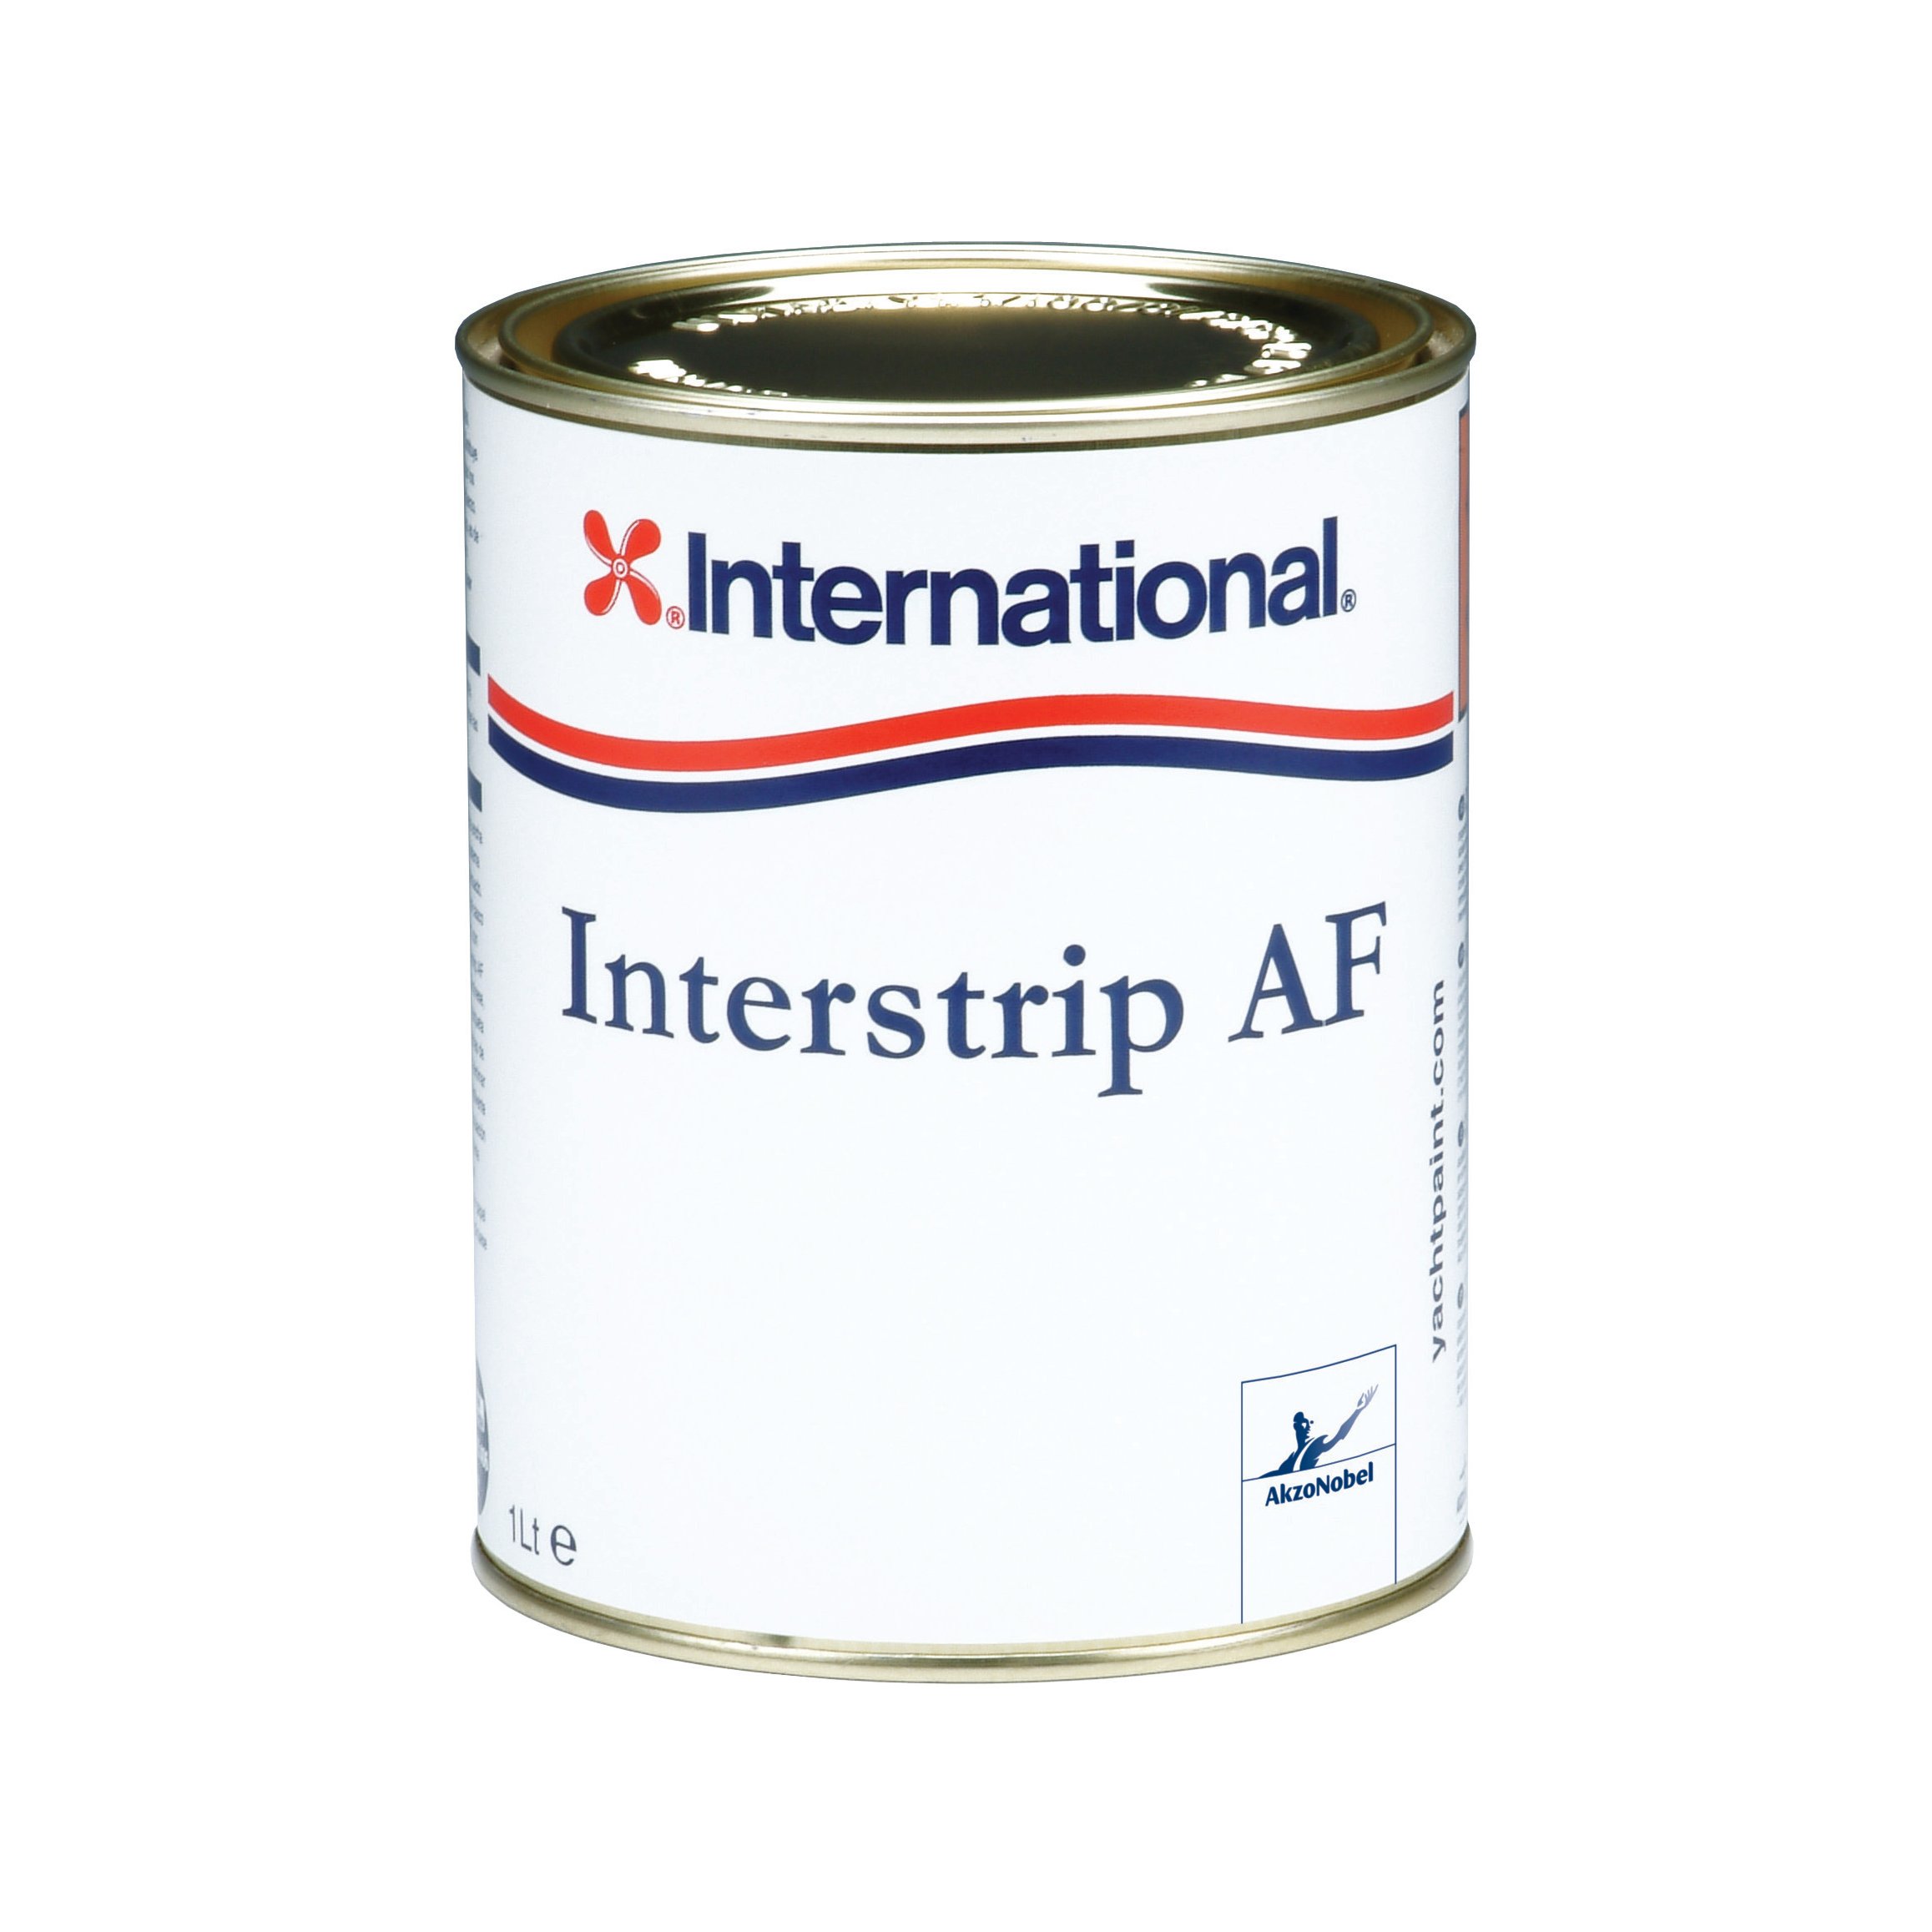 International Interstrip AF décapant - 1000ml